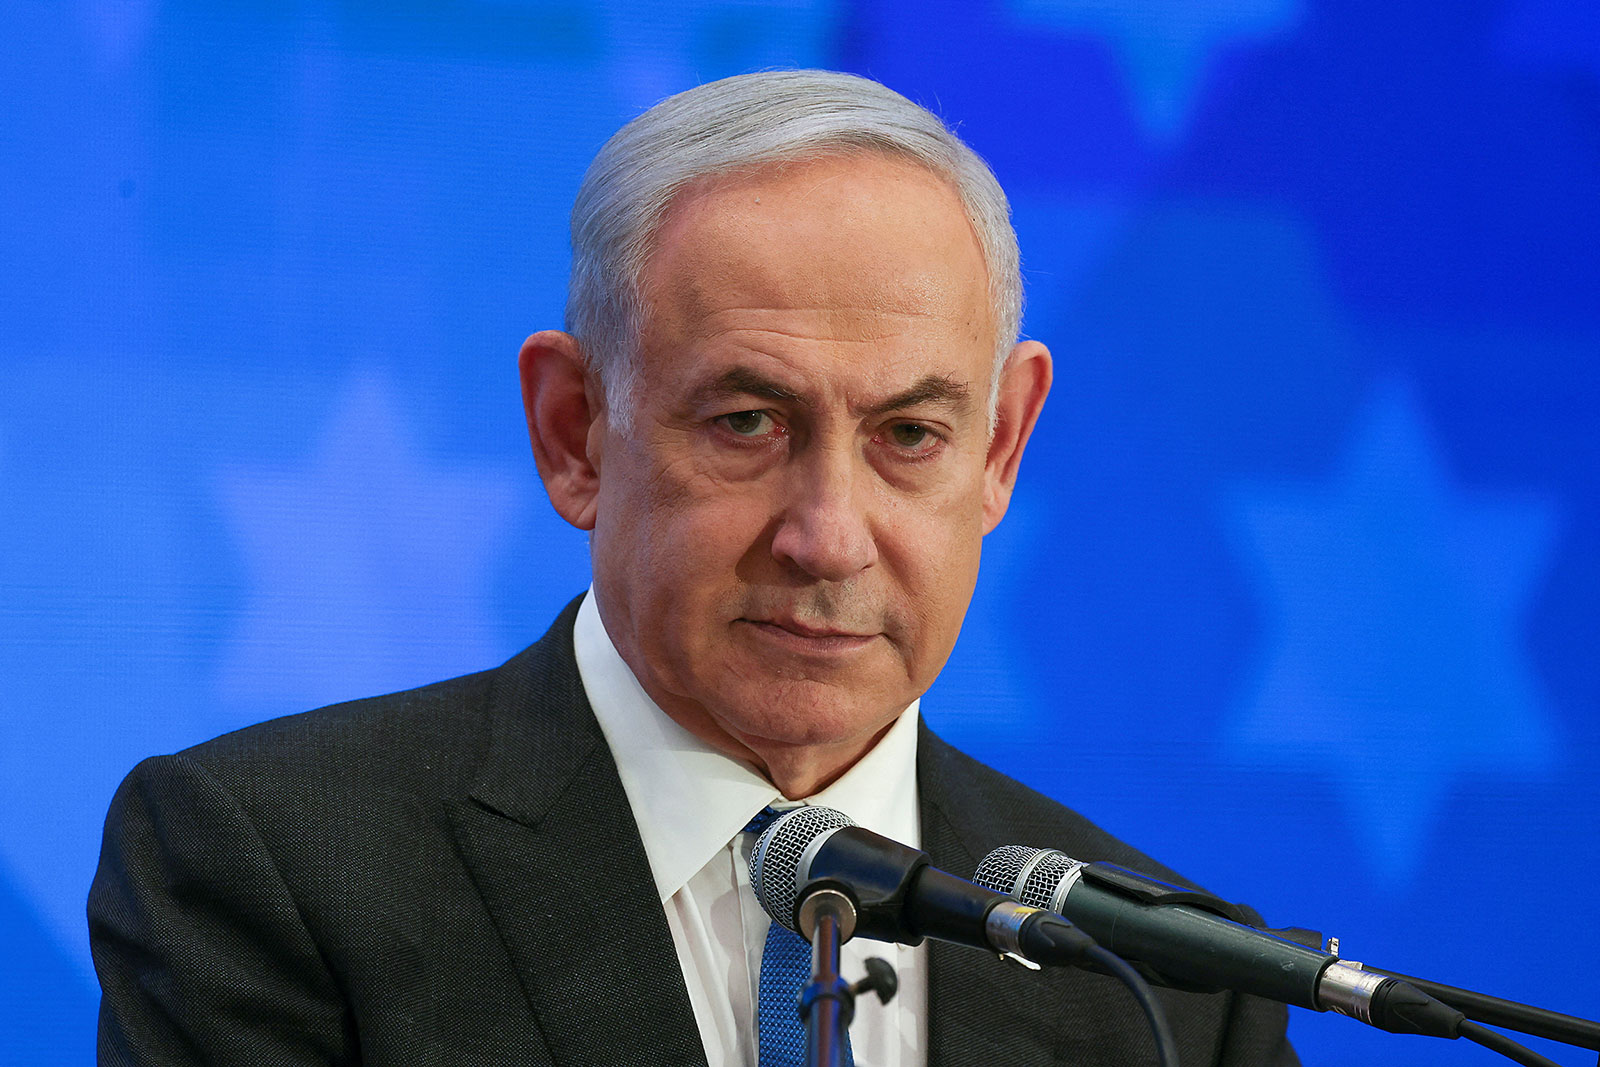 Israeli Prime Minister Benjamin Netanyahu speaks at an event in Jerusalem on February 18.